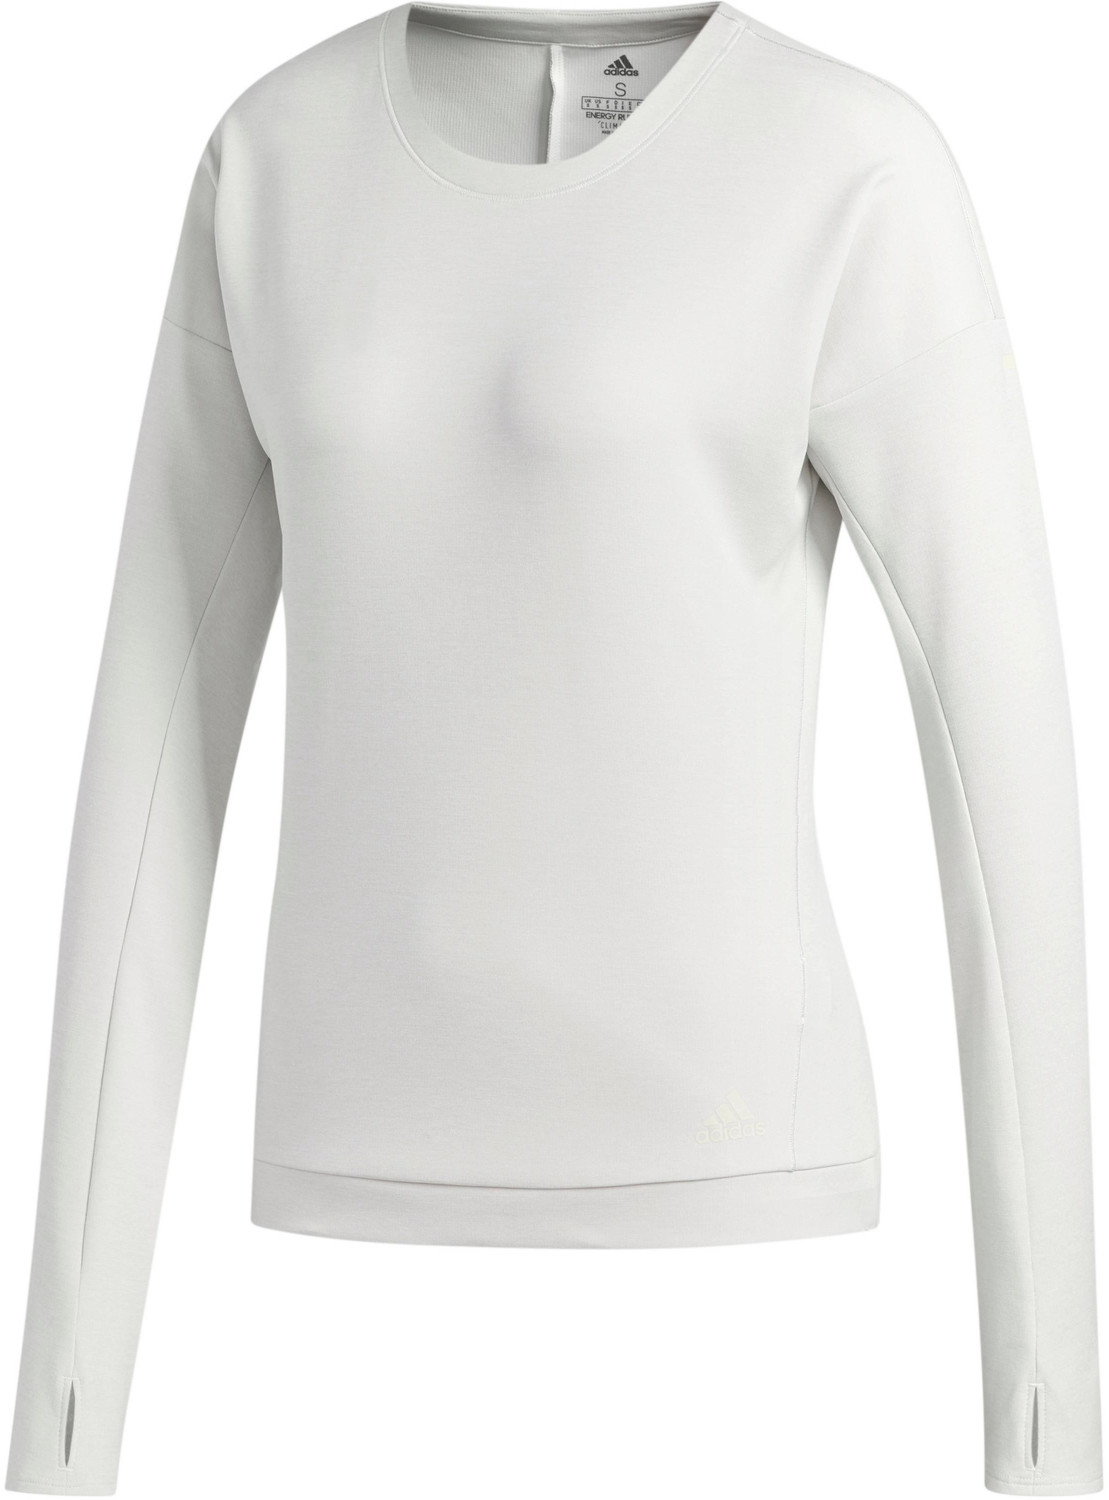 Adidas Supernova Run Cru Sweatshirt Women's white/ raw white